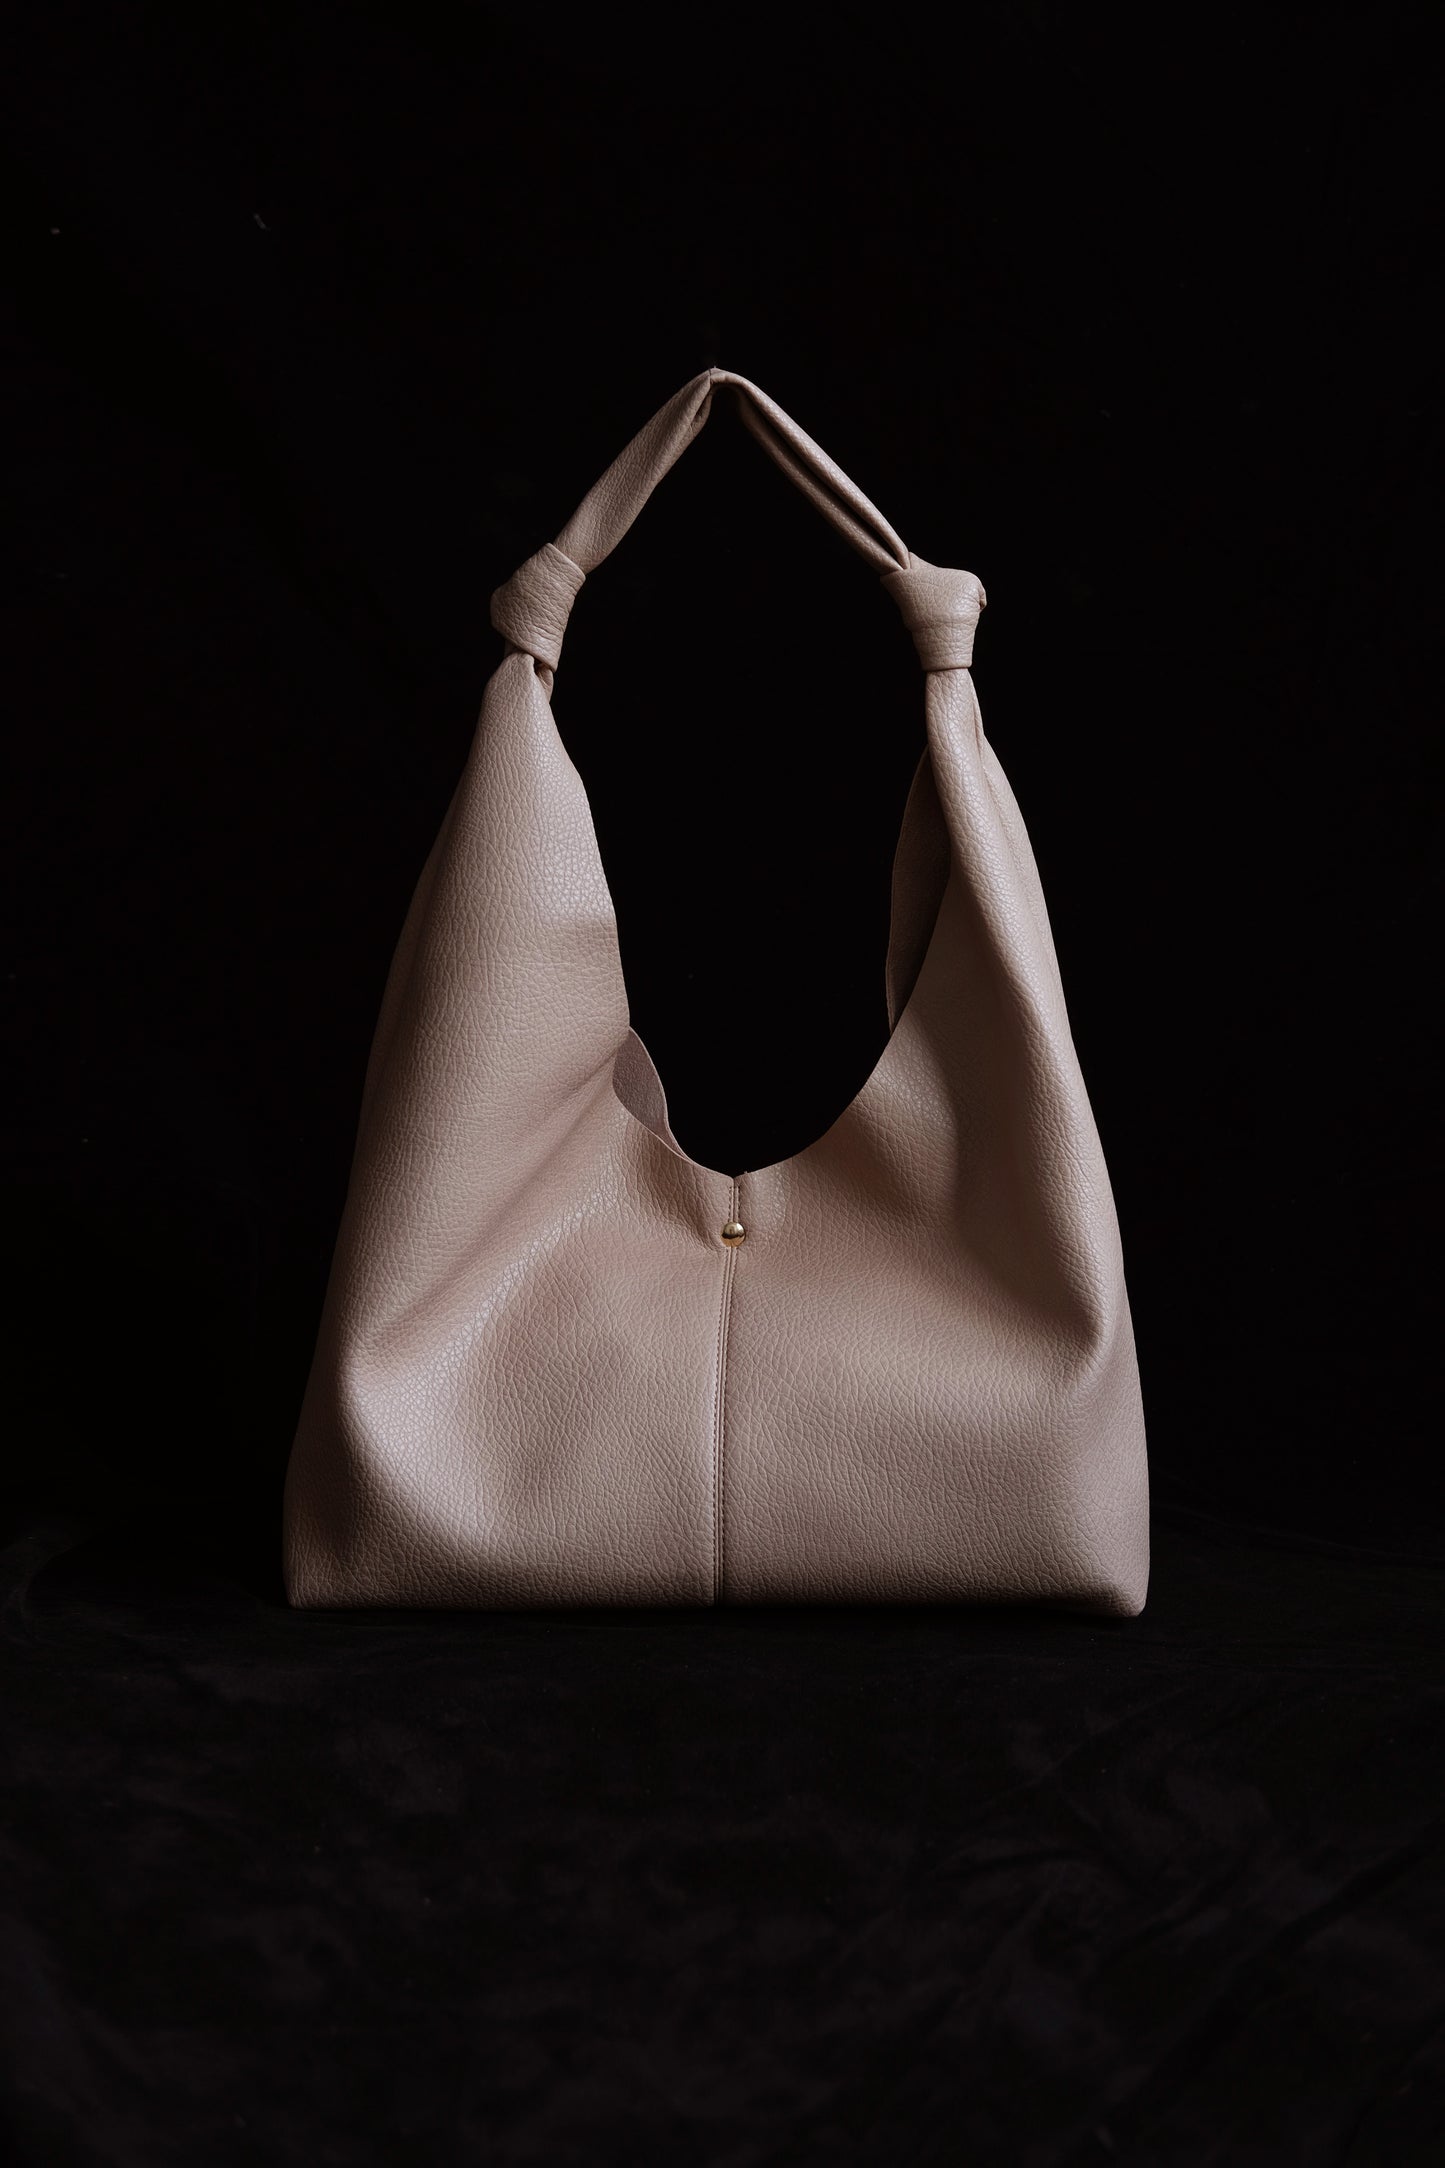 Vintage hand-held shoulder bag in almond